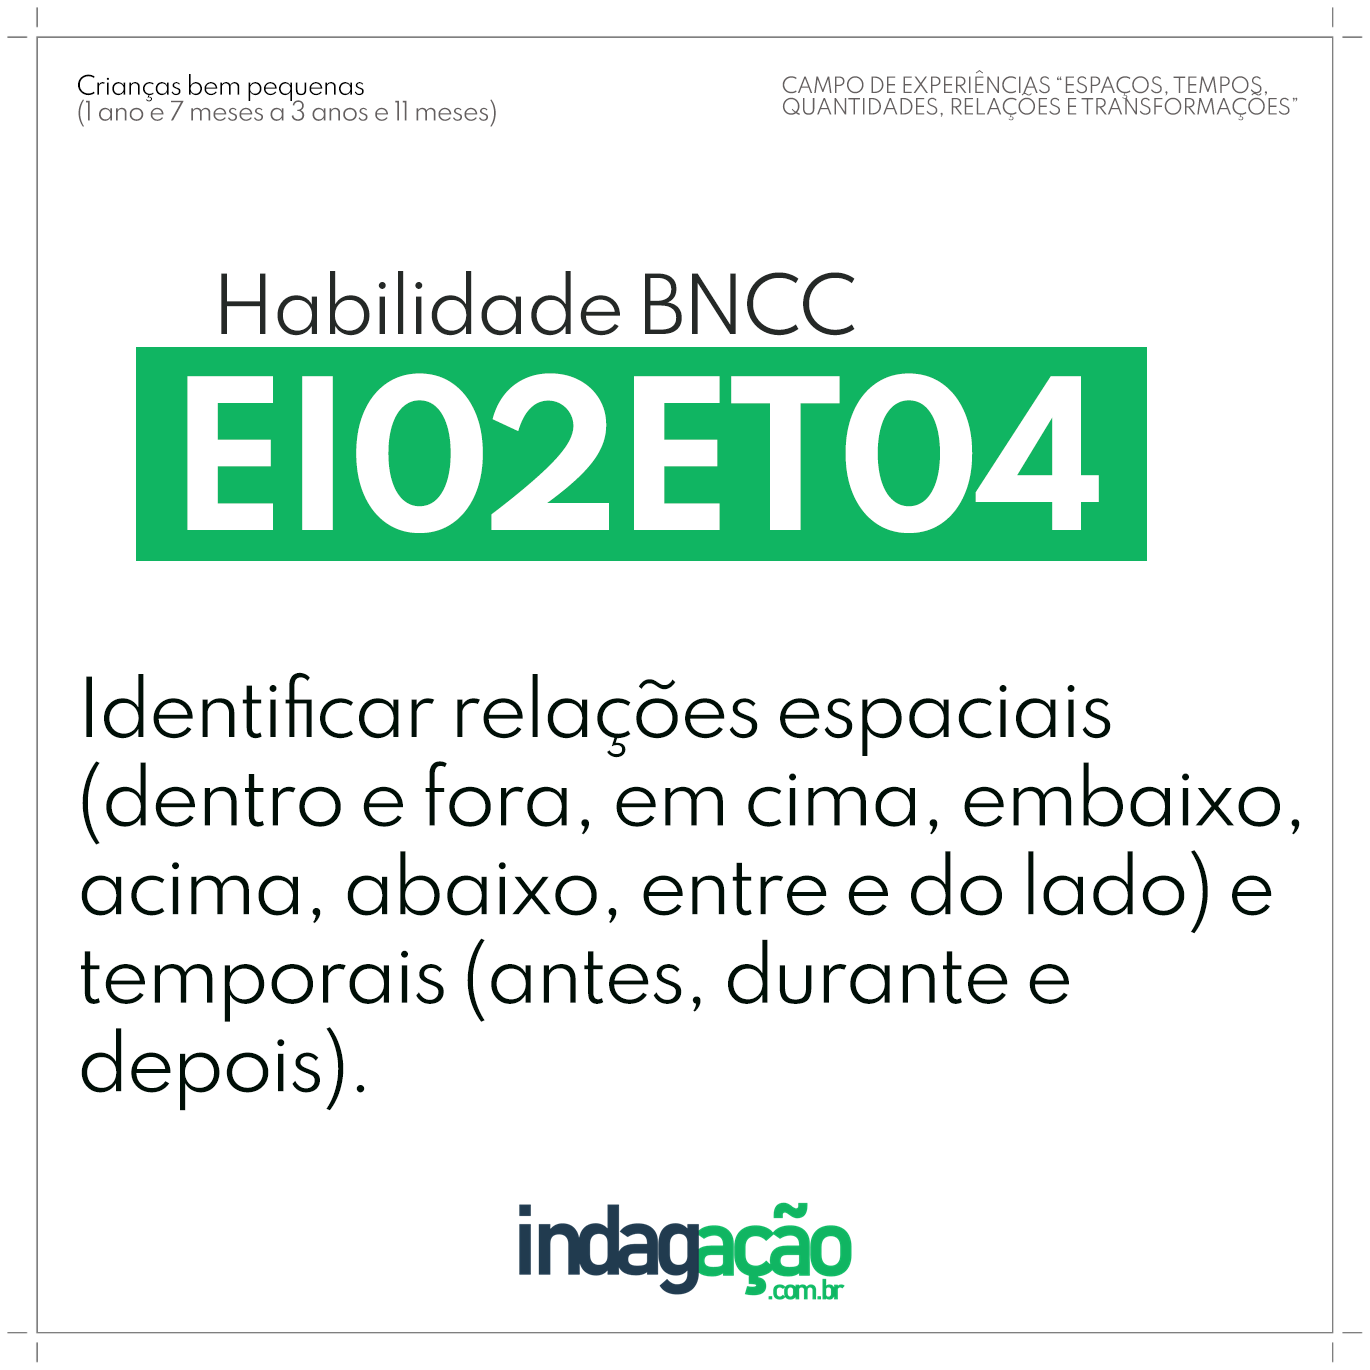 Habilidade EI02ET04 BNCC